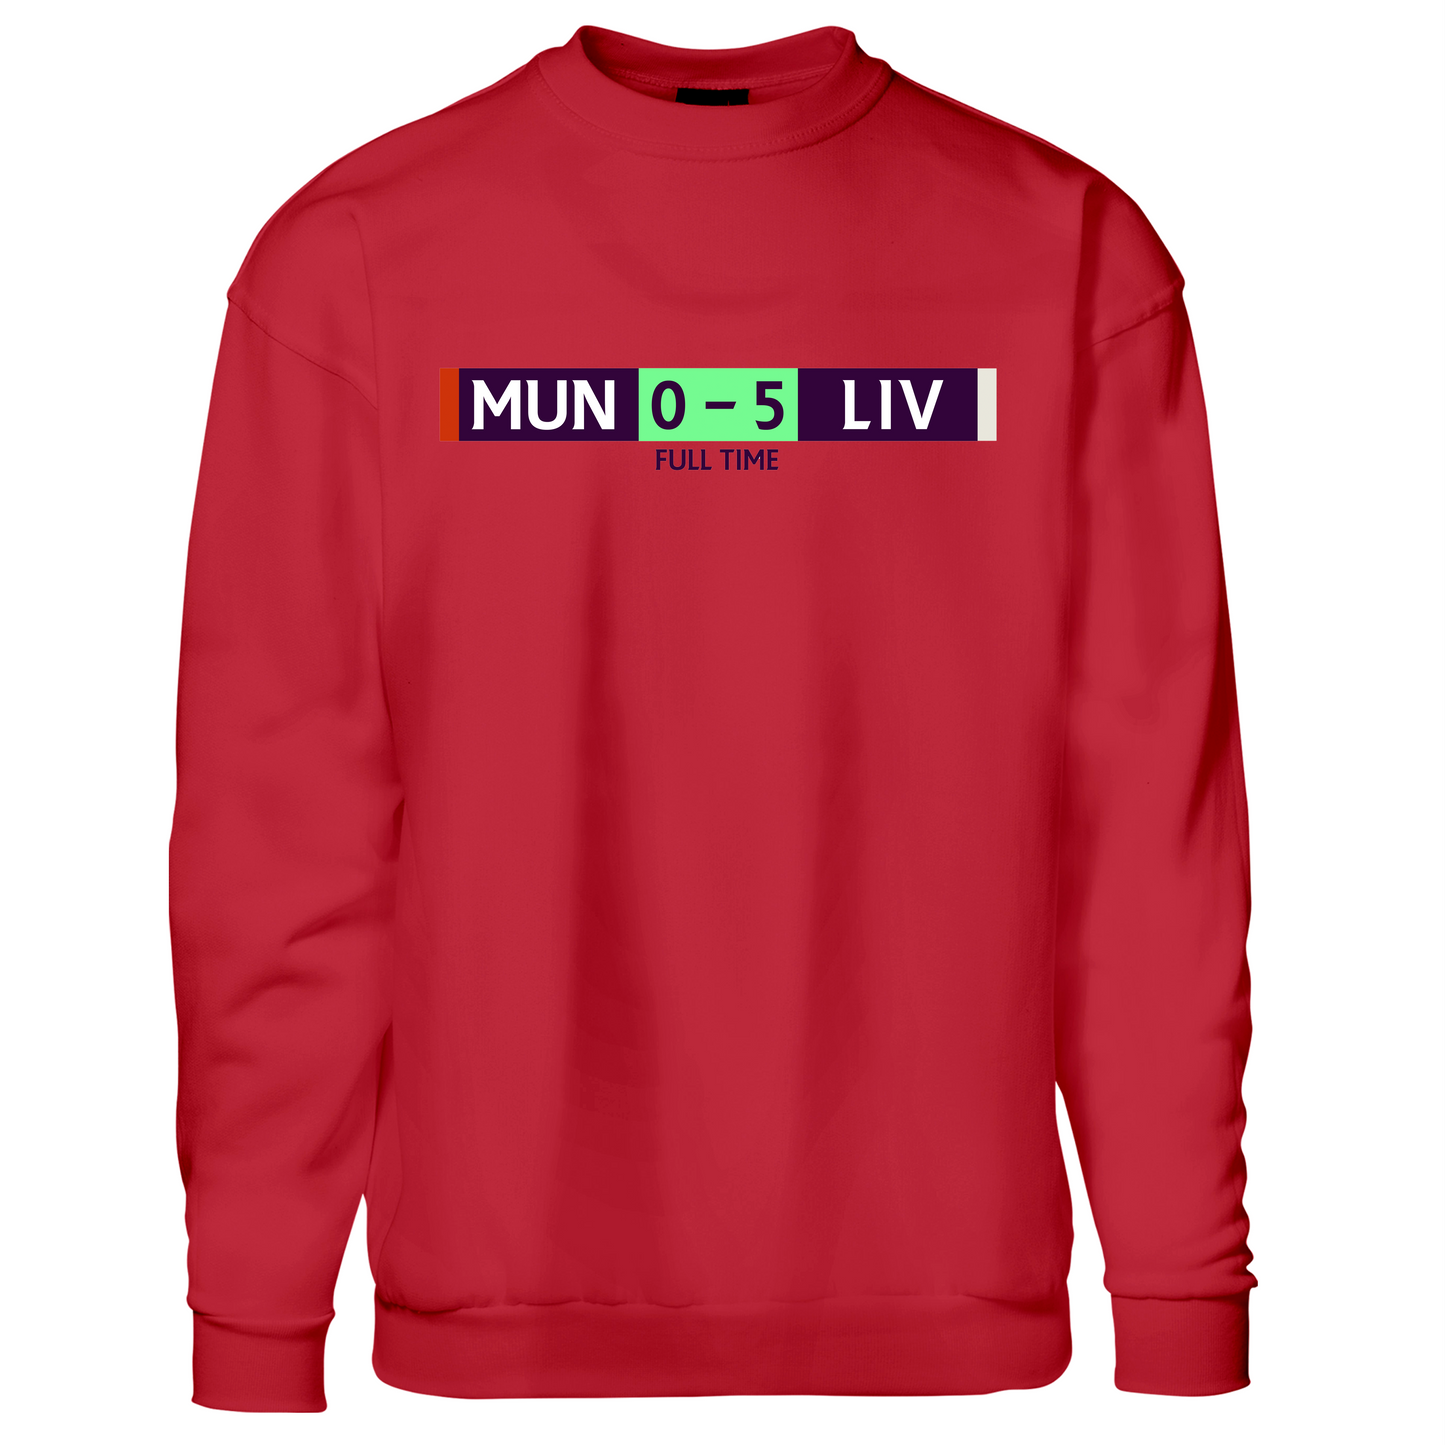 MUN 0 - 5 - Sweatshirt